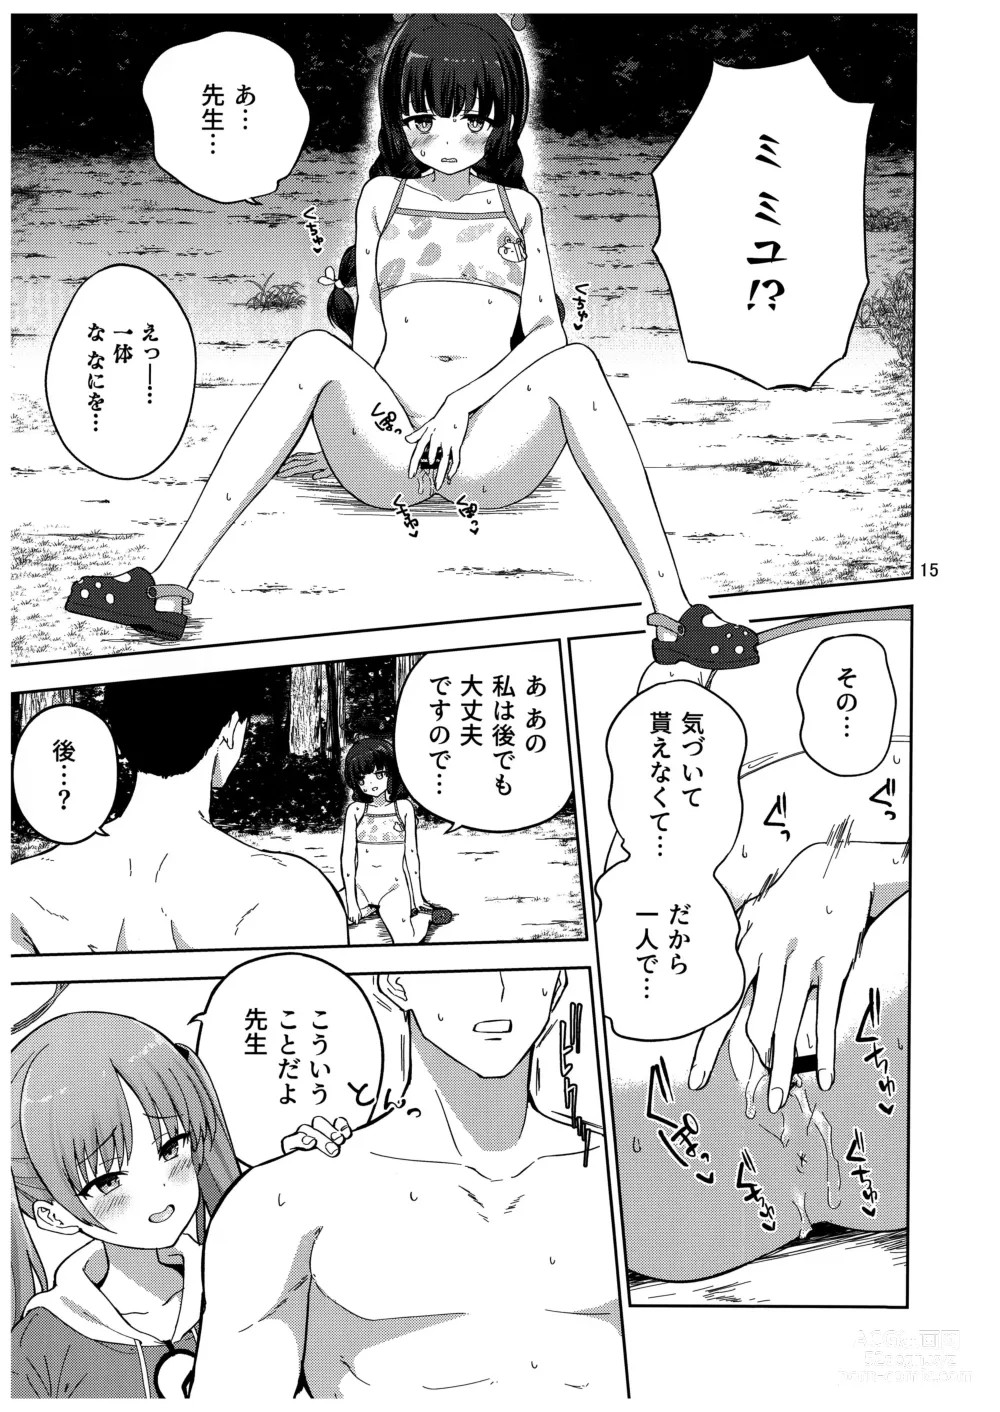 Page 16 of doujinshi Usagi to Watashi no Hyouryuu Nikki